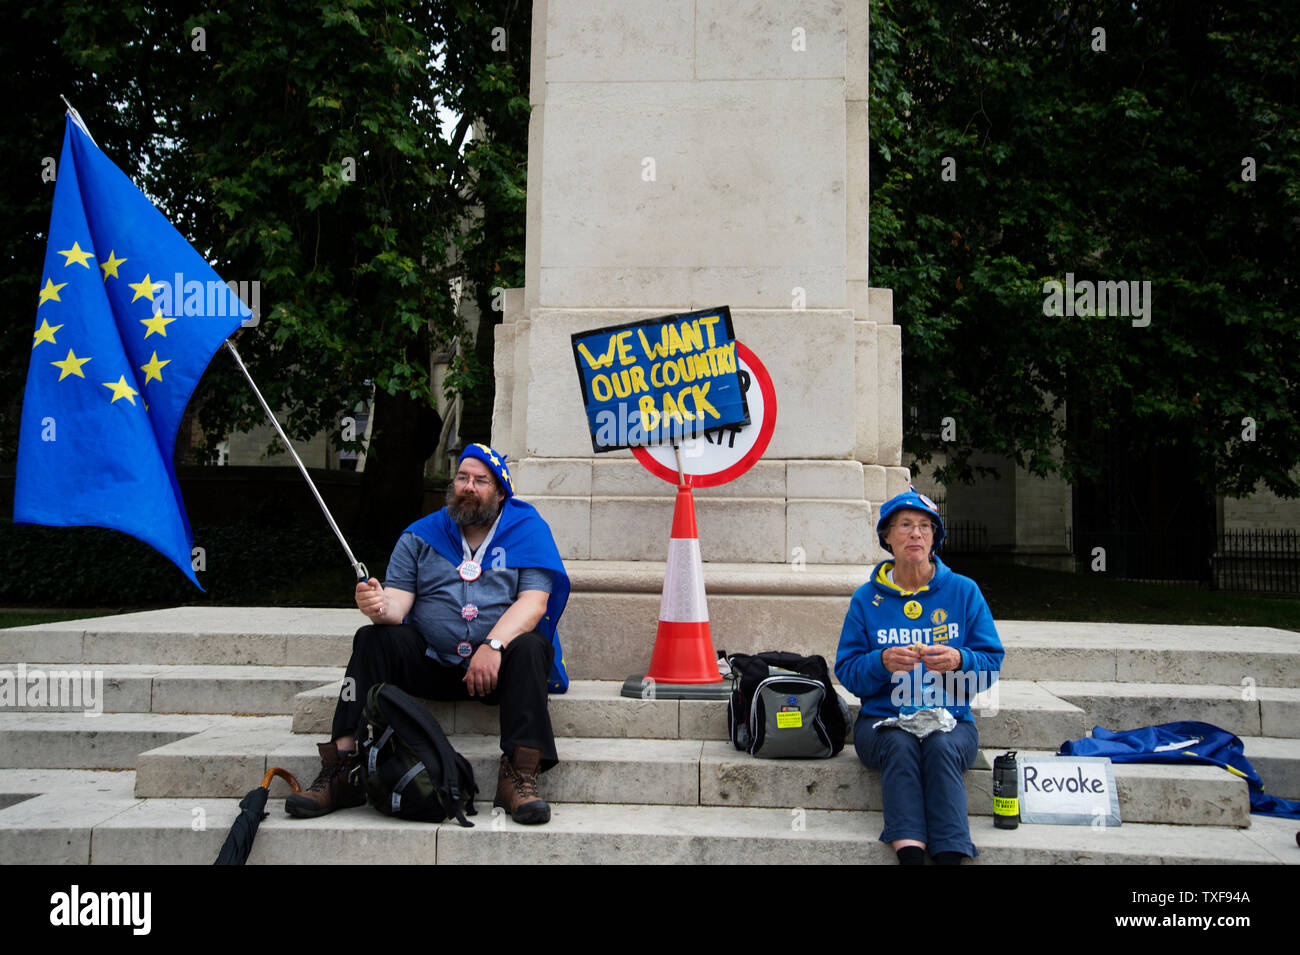 Westminster, Londres. Le parlement. Restent deux protestataires avec drapeau européen et un écriteau disant 'Nous voulons que notre pays'. Banque D'Images